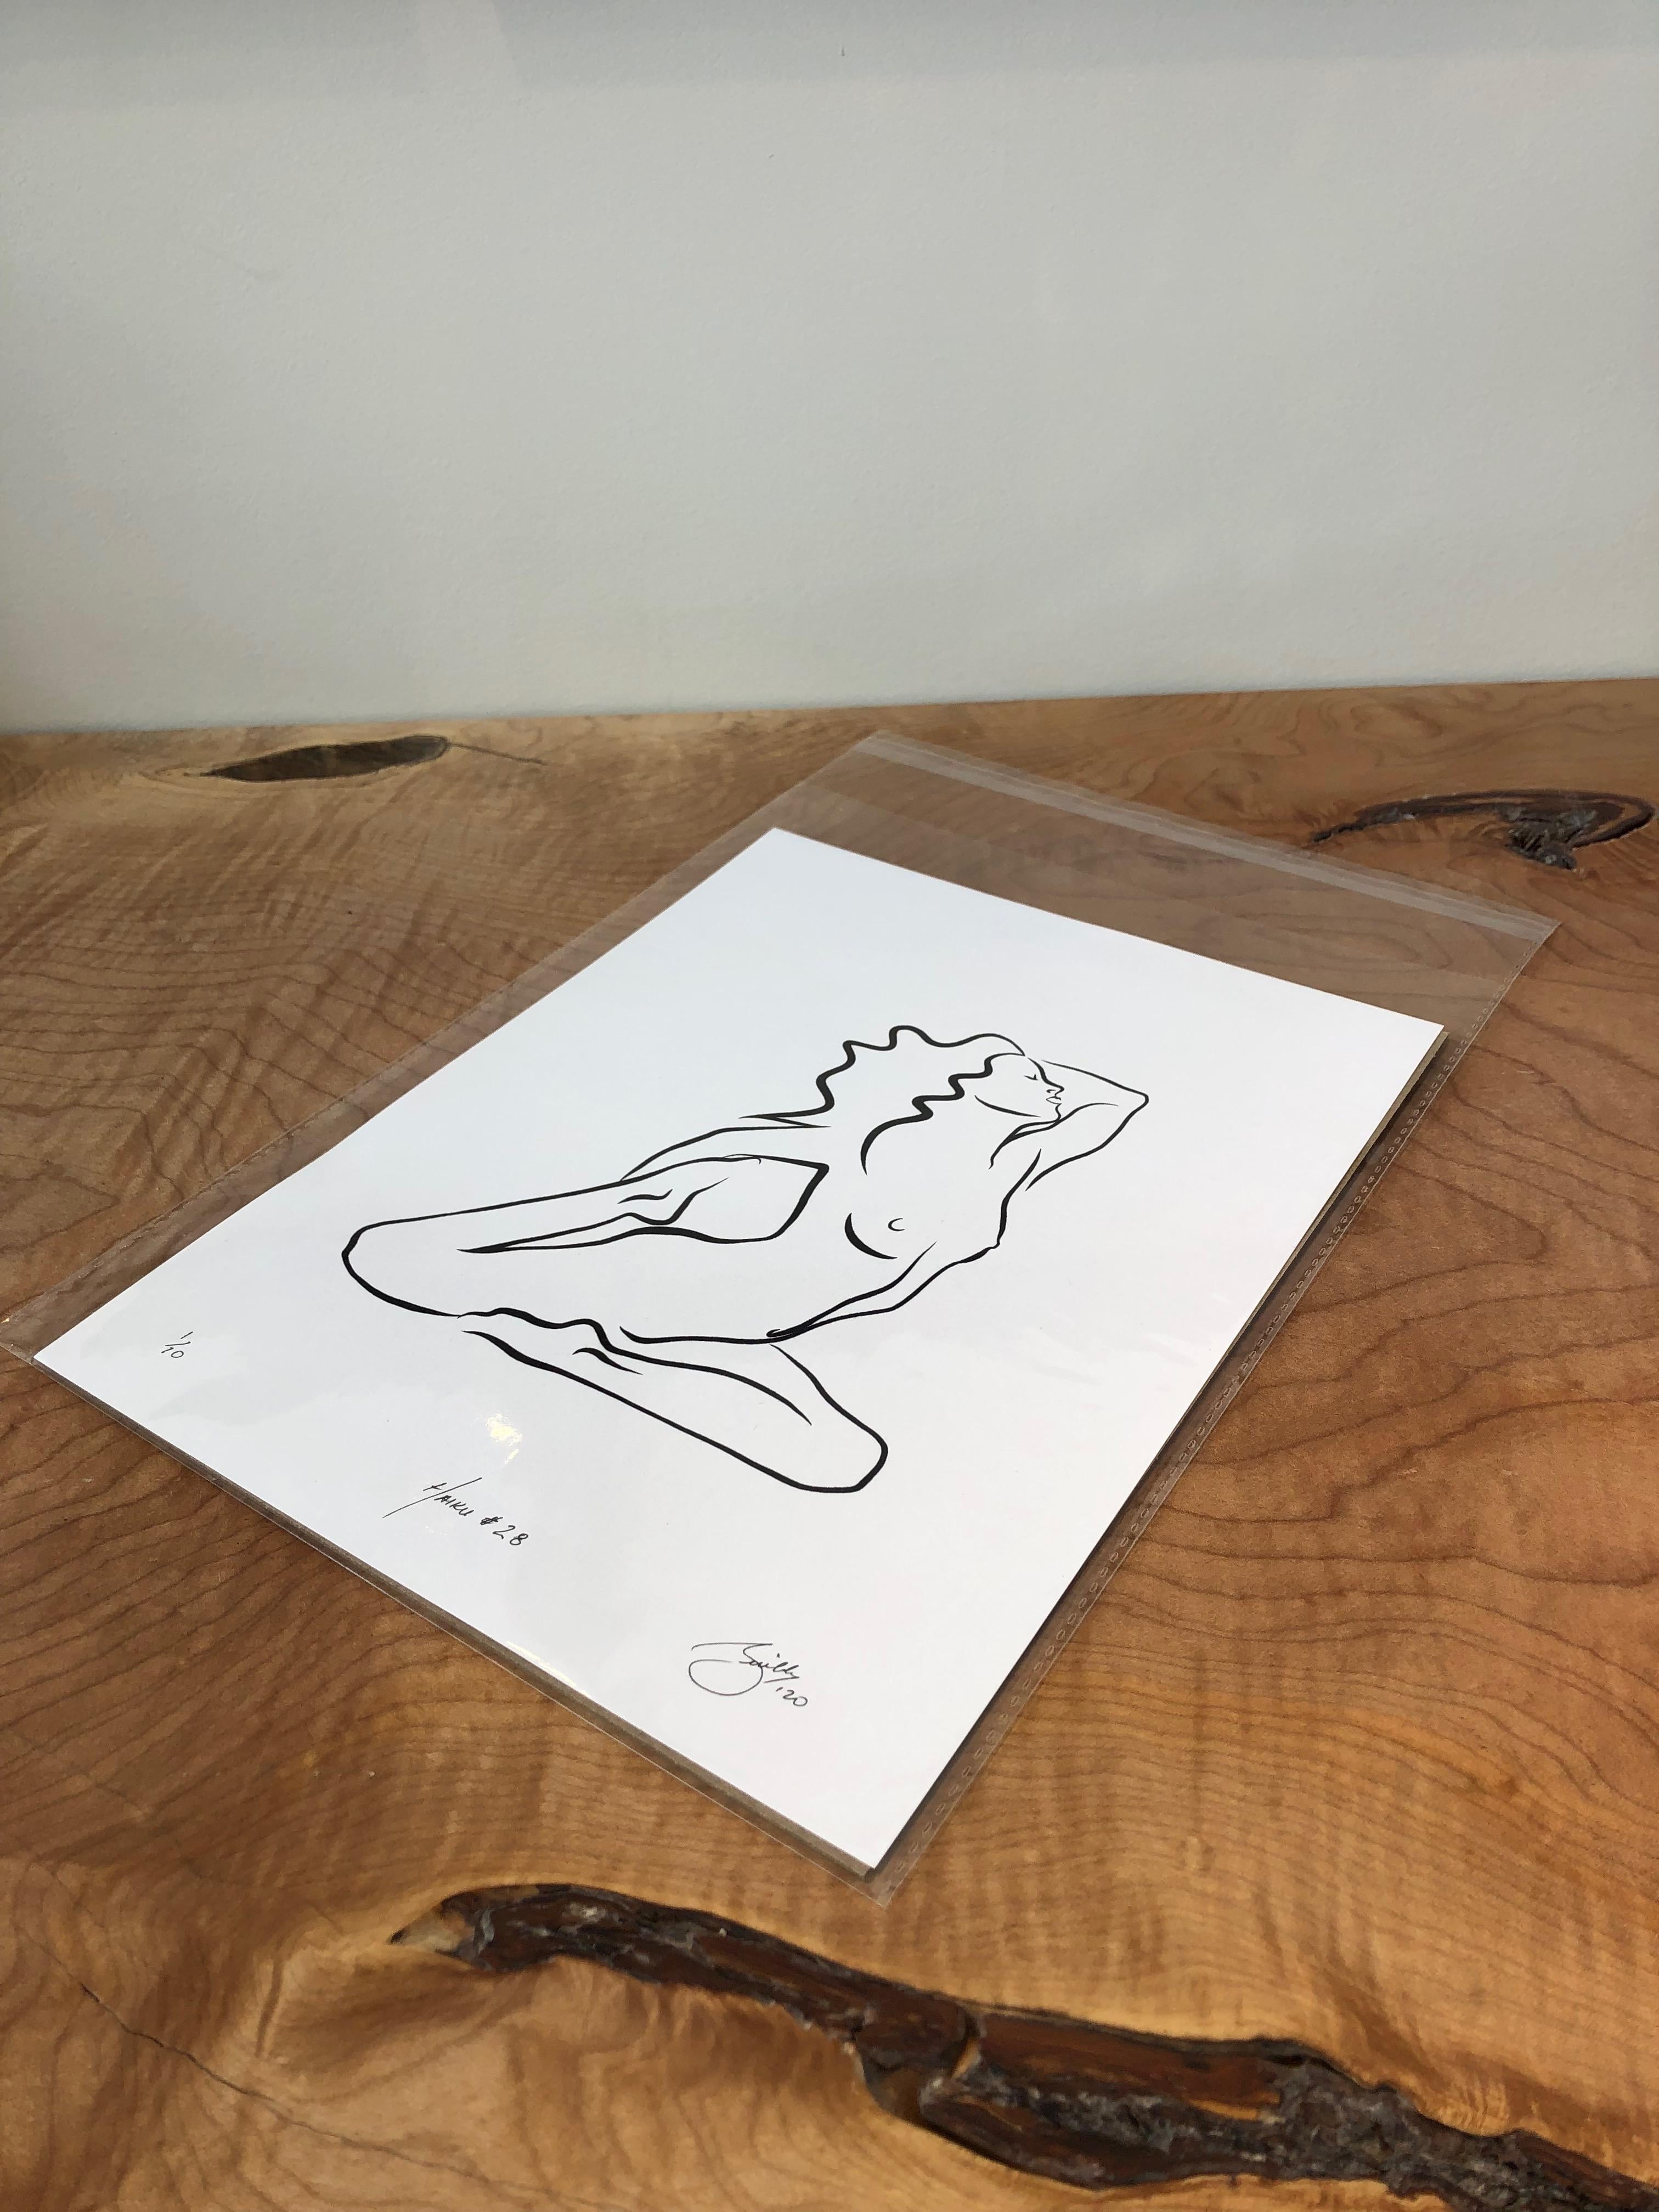 Haiku #28, 1/50 - Digital Vector Drawing Kneeling Female Nude Woman Figure - Contemporary Art by Michael Binkley